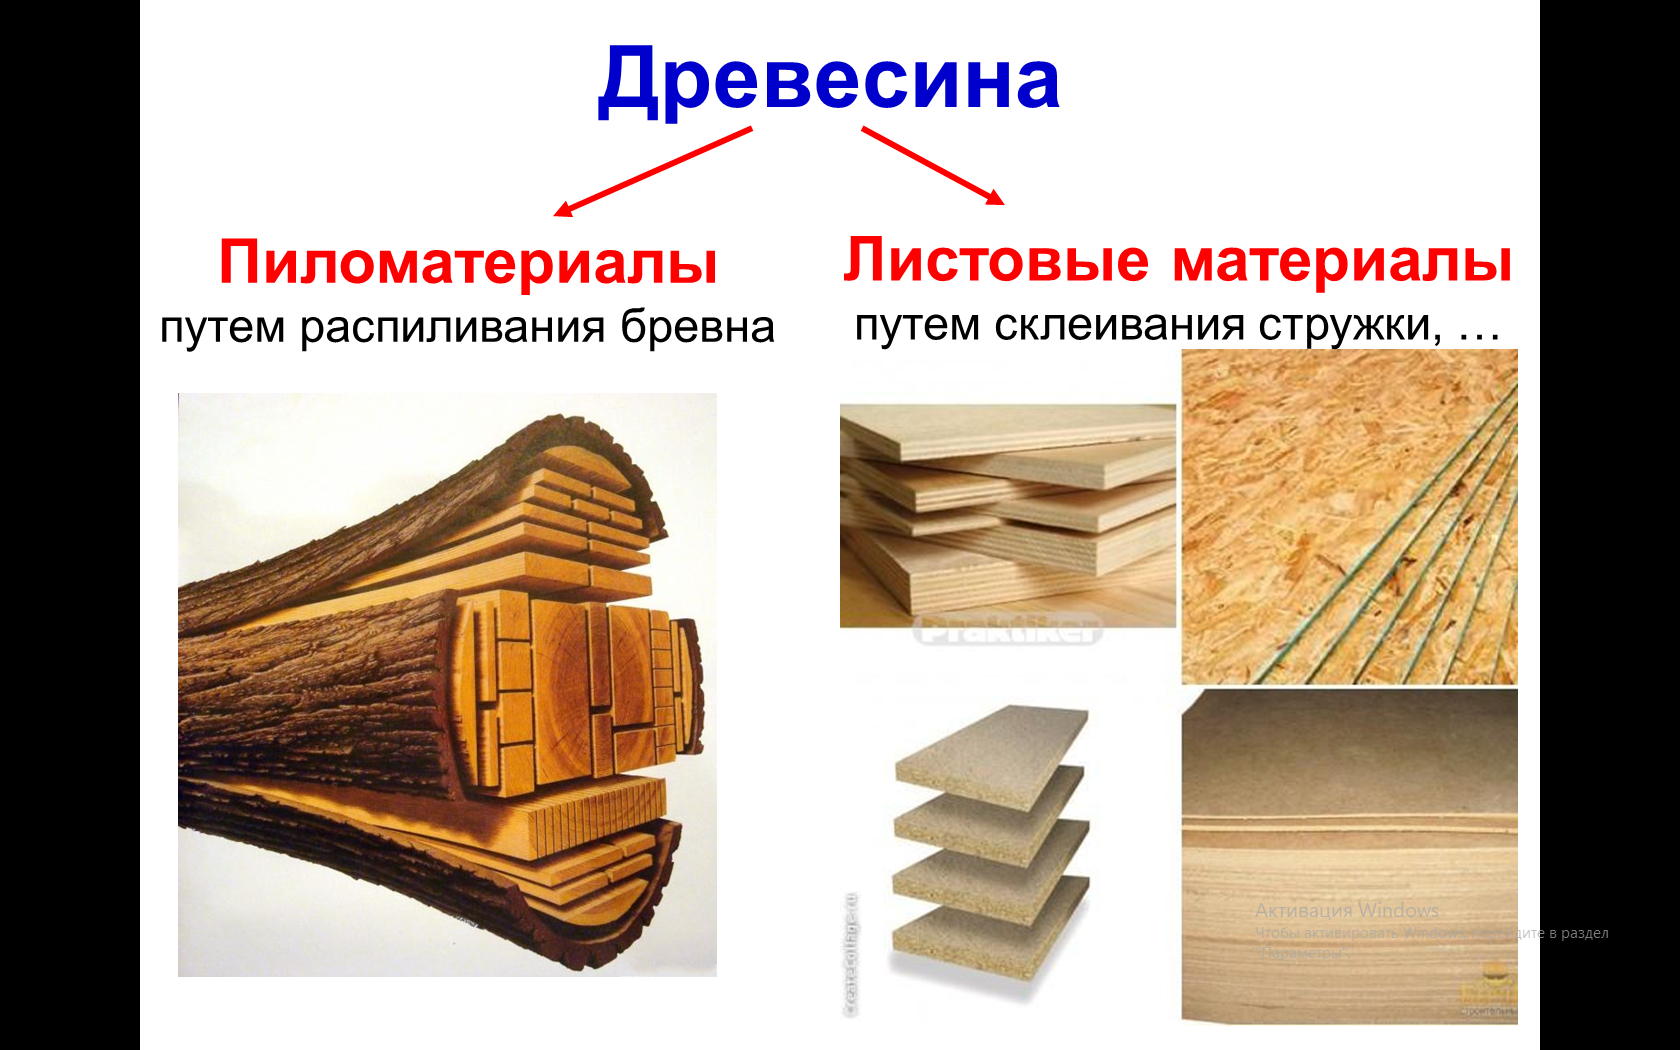 Дерева можно применять для. Древесина и пиломатериалы. Пиломатериалы и древесные материалы. Древесина и древесные материалы. Пиломатериалы из древесины.